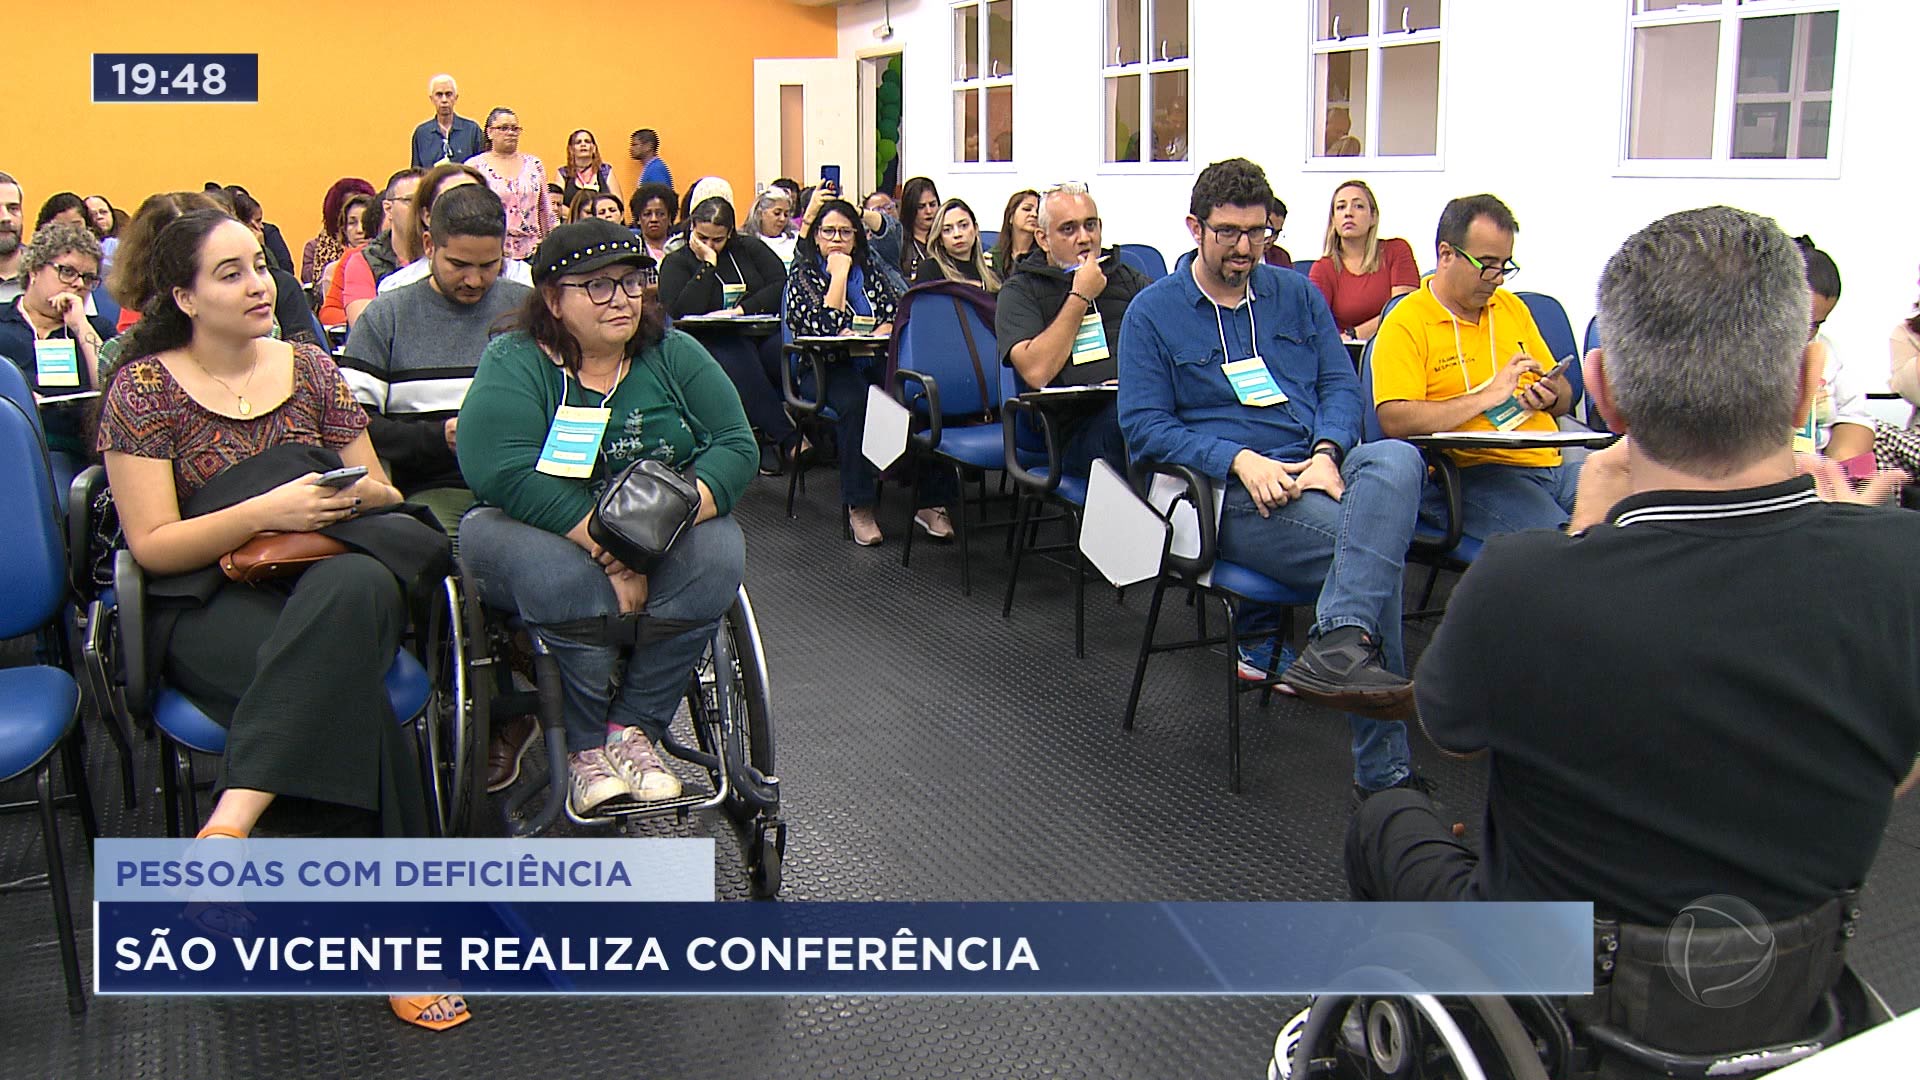 Vídeo: São Vicente realiza conferência das pessoas com deficiência